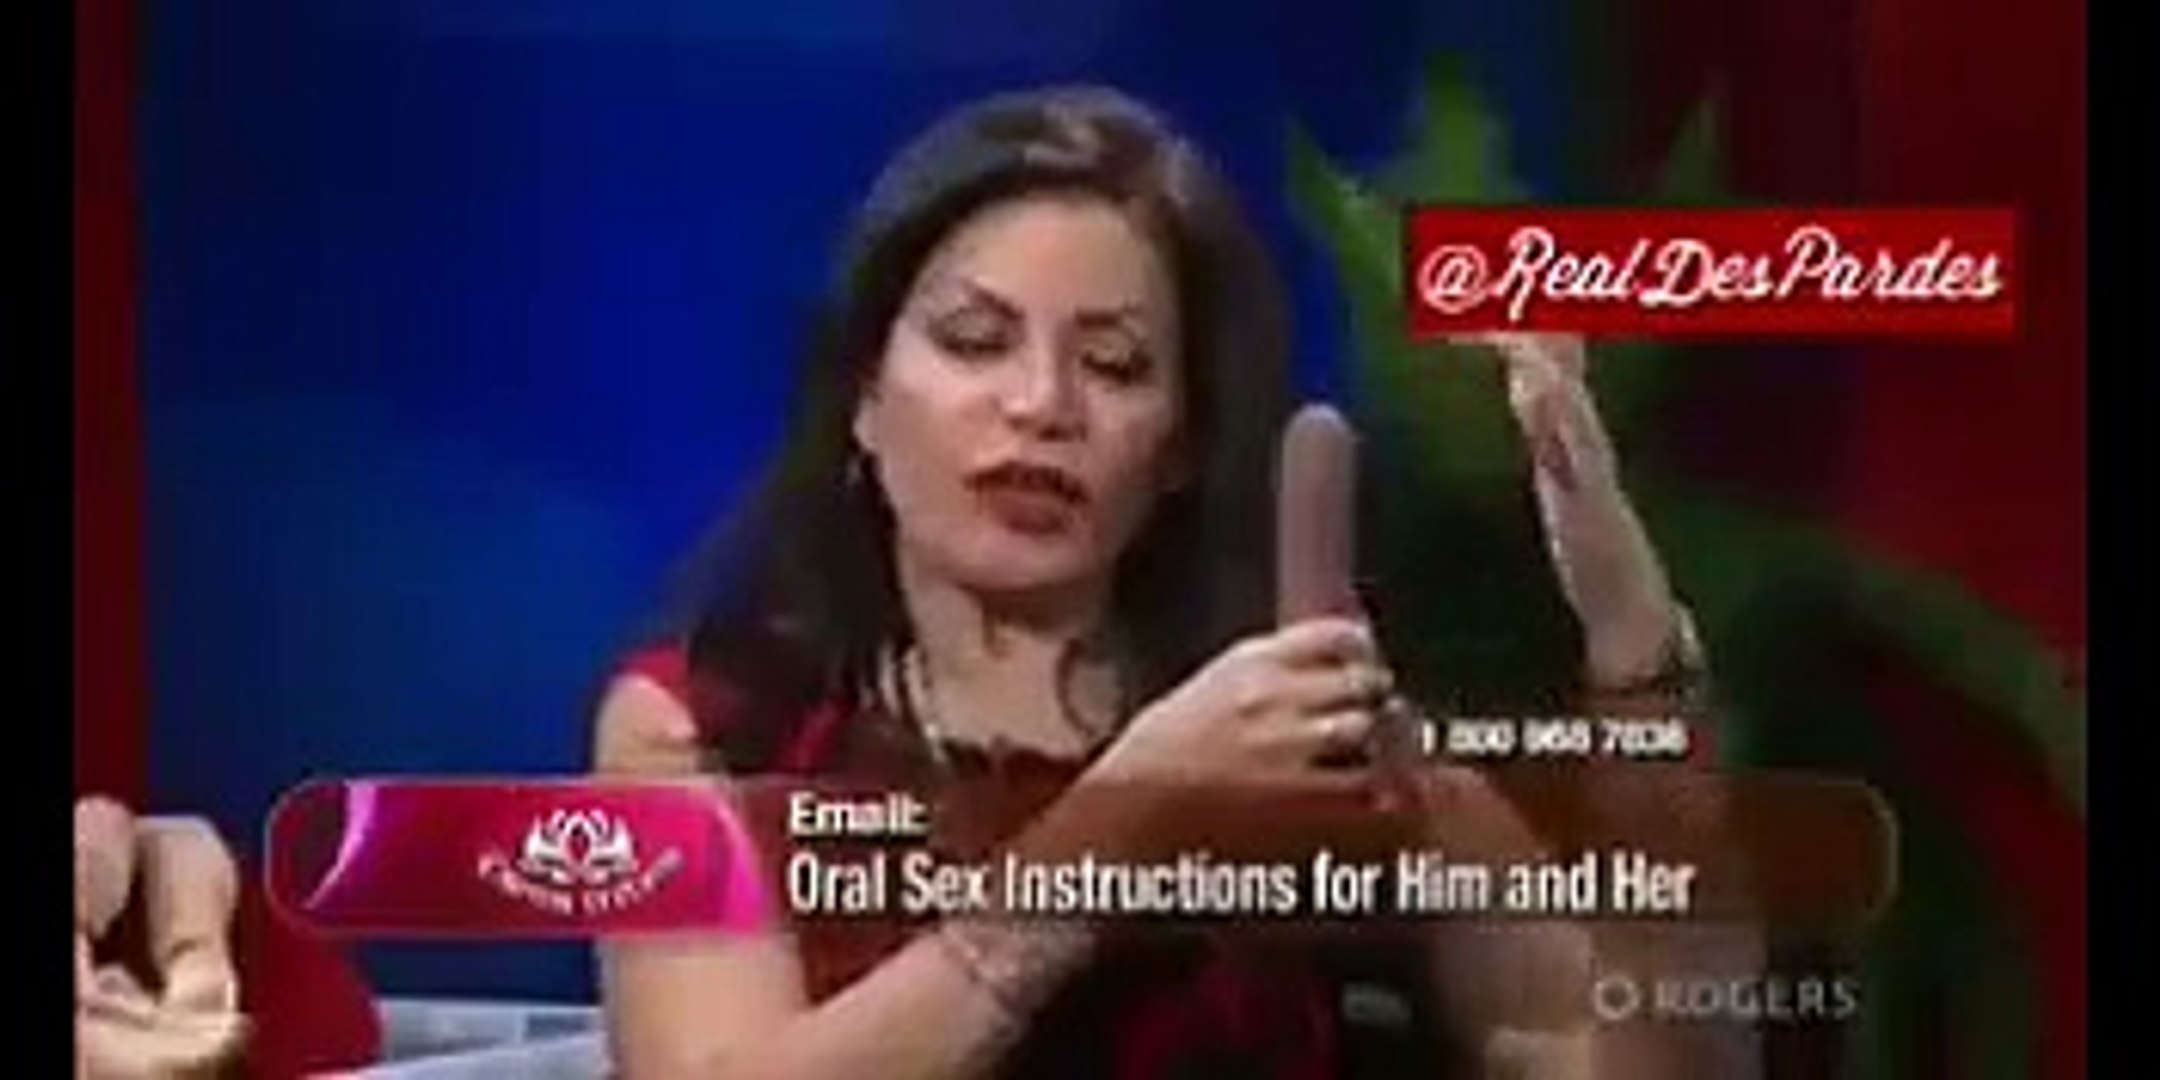 deborah rosenbaum recommends oral sex education video pic